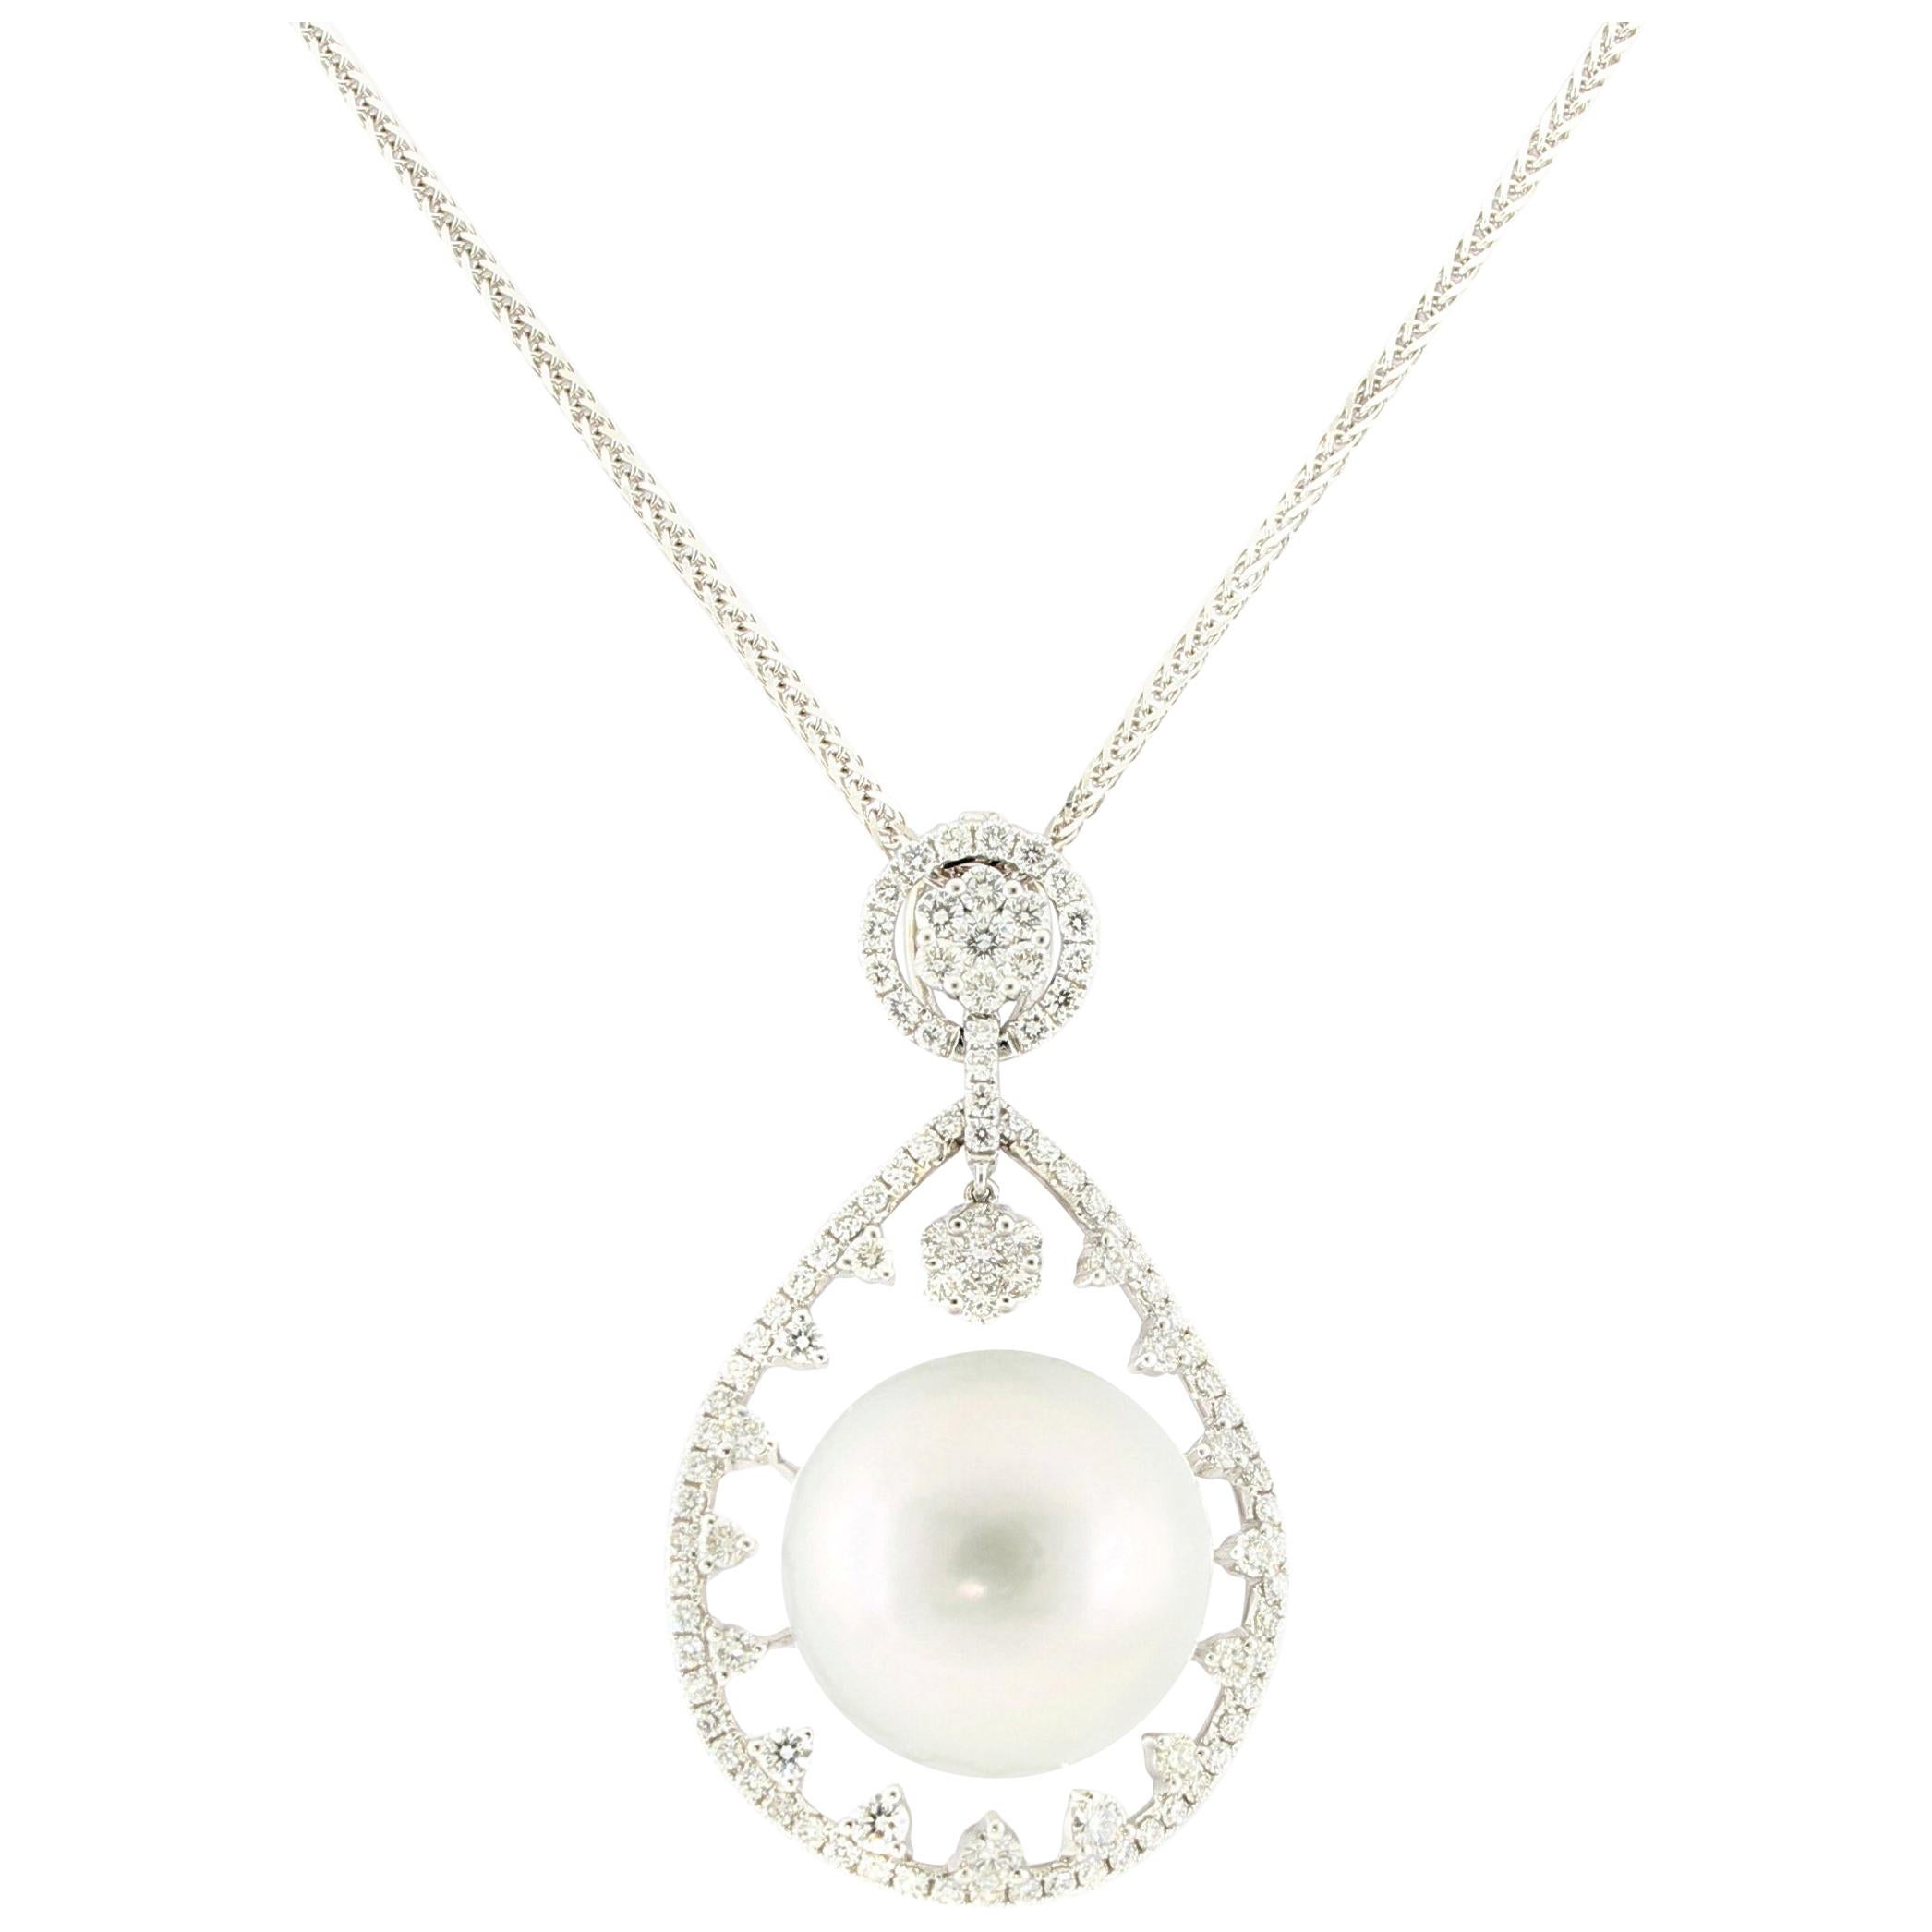 Rare pendentif en or 18 carats avec diamants et perle blanche des mers du Sud